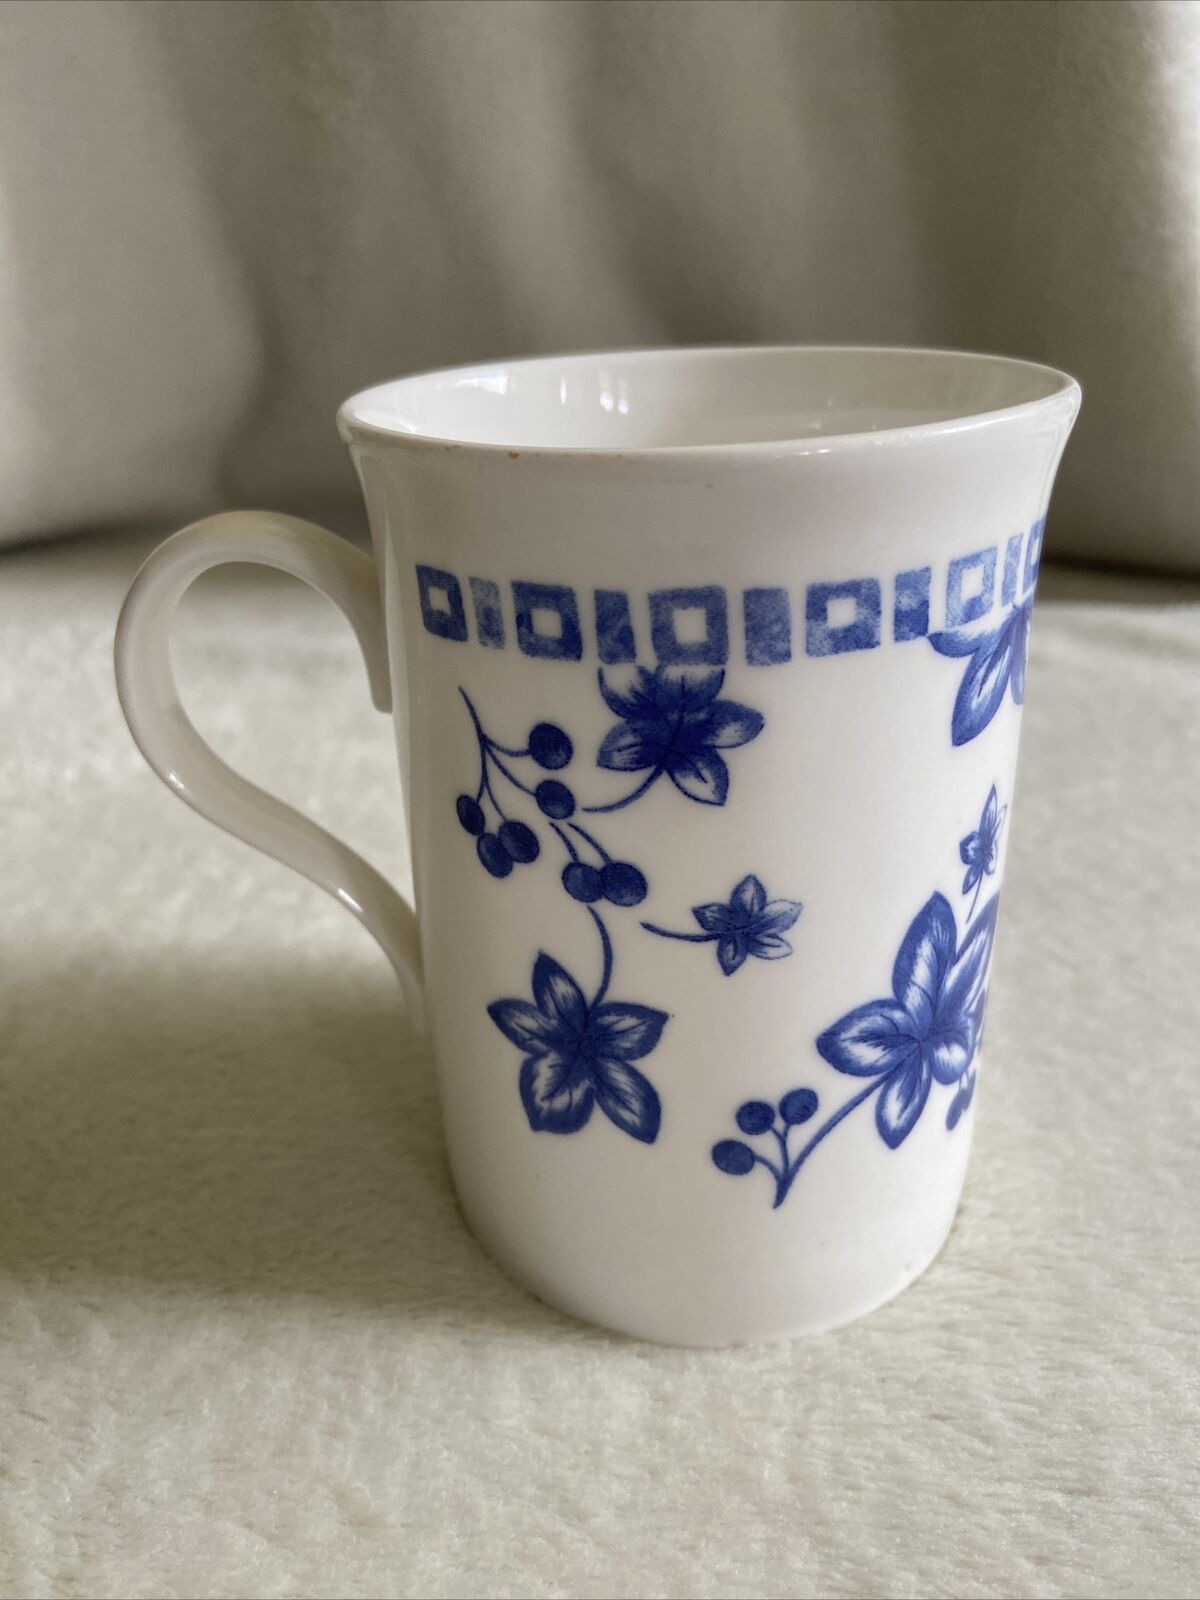 Vintage Floral Mug Crown Trent Fine Bone China Made in England Mug Floral design